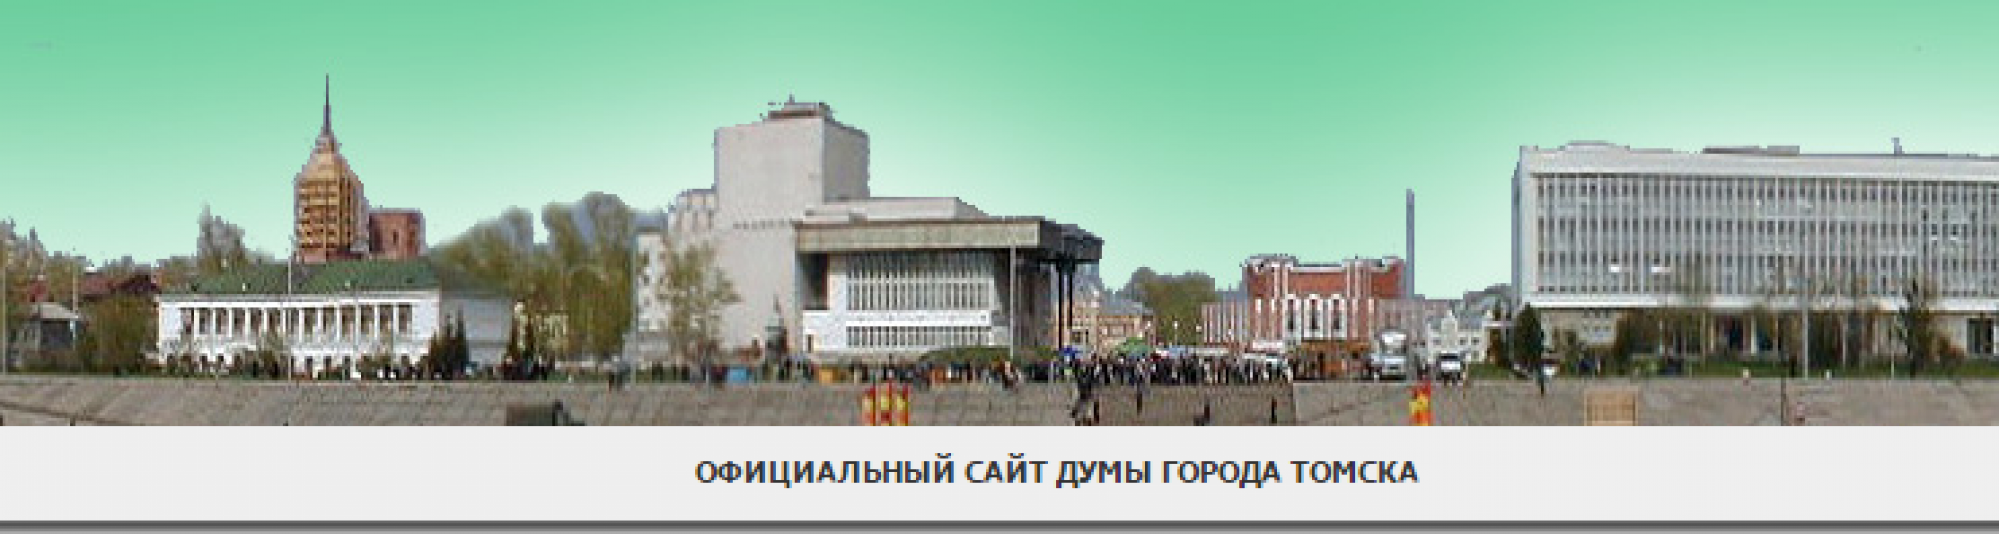 Старая версия официального сайта Думы города Томска доступна по адресу http://duma2.admin.tomsk.ru/